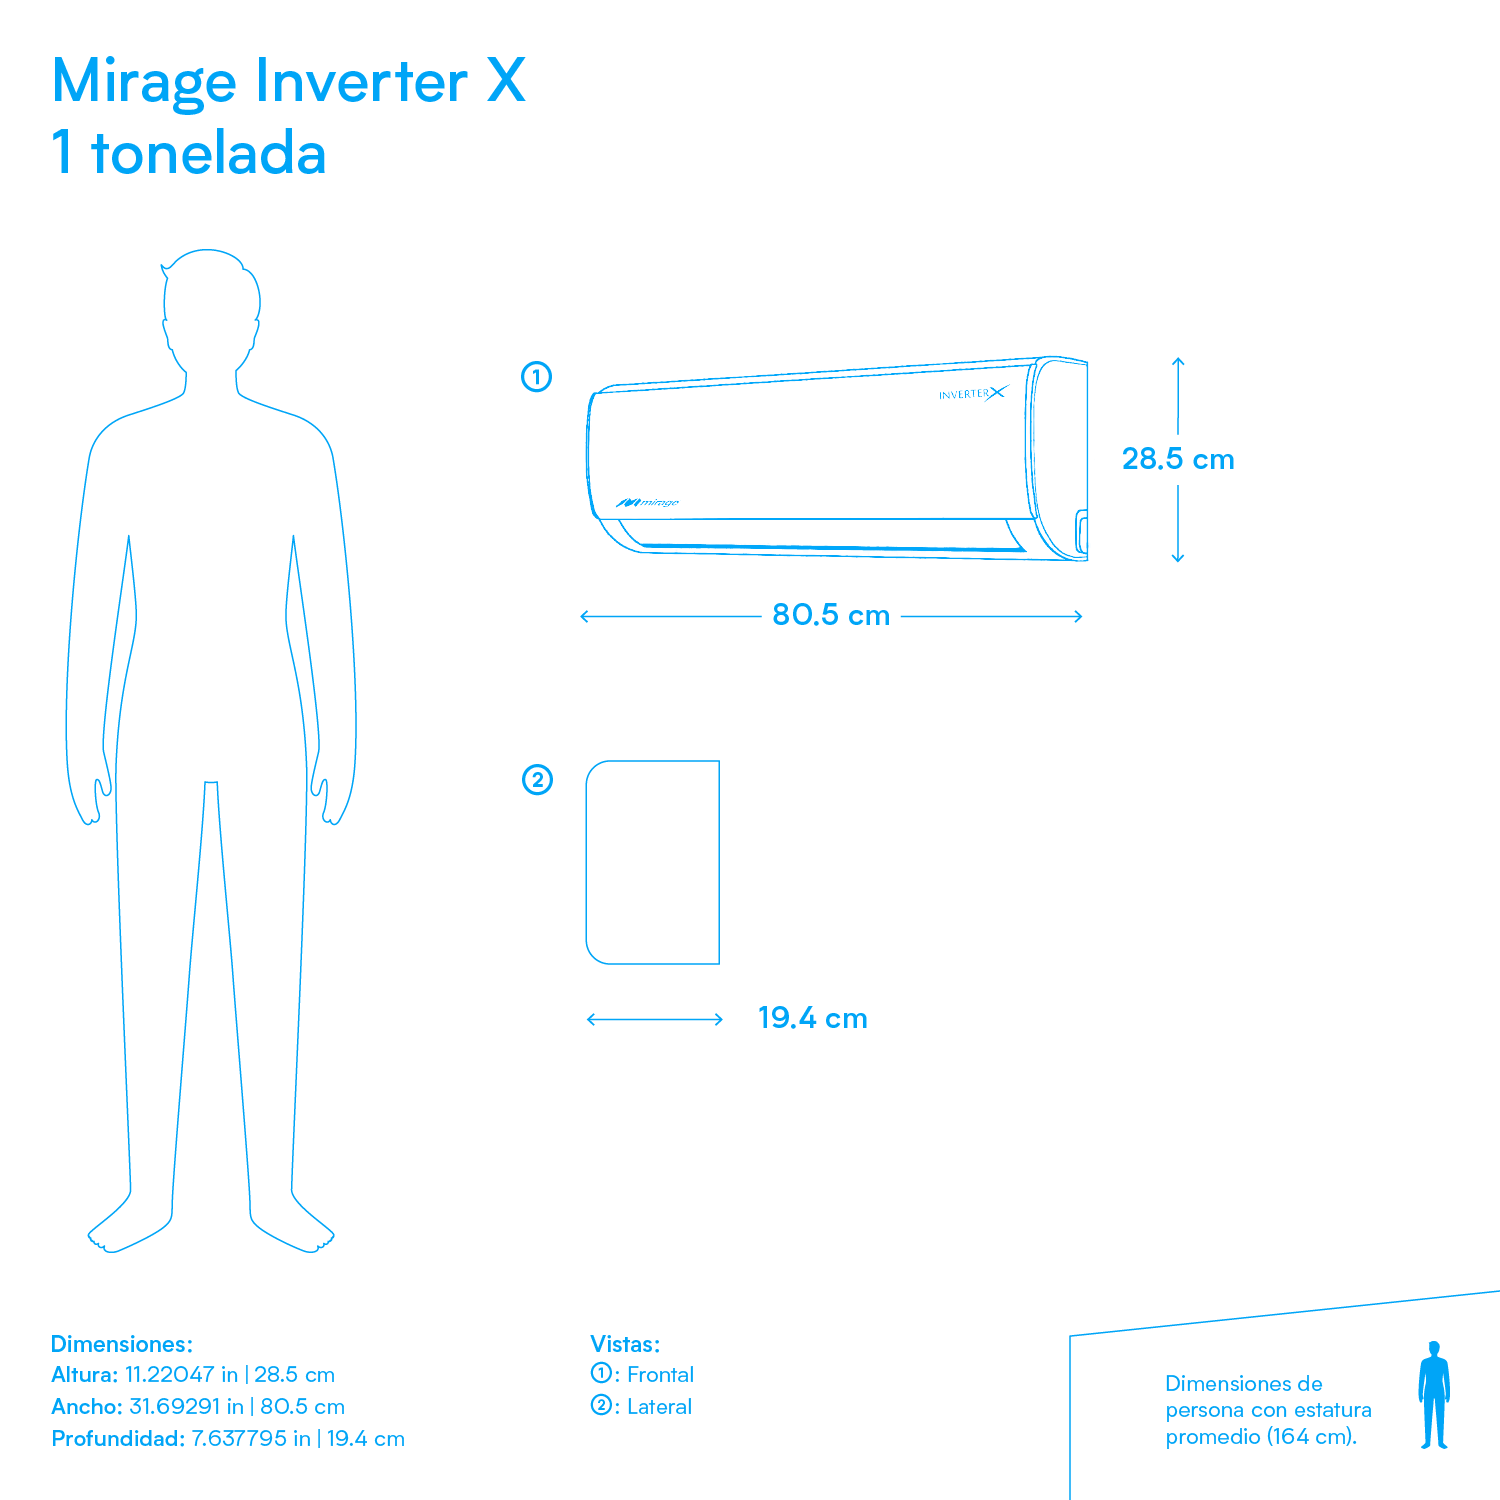 Minisplit Mirage Inverter X - 1 tonelada - 220v